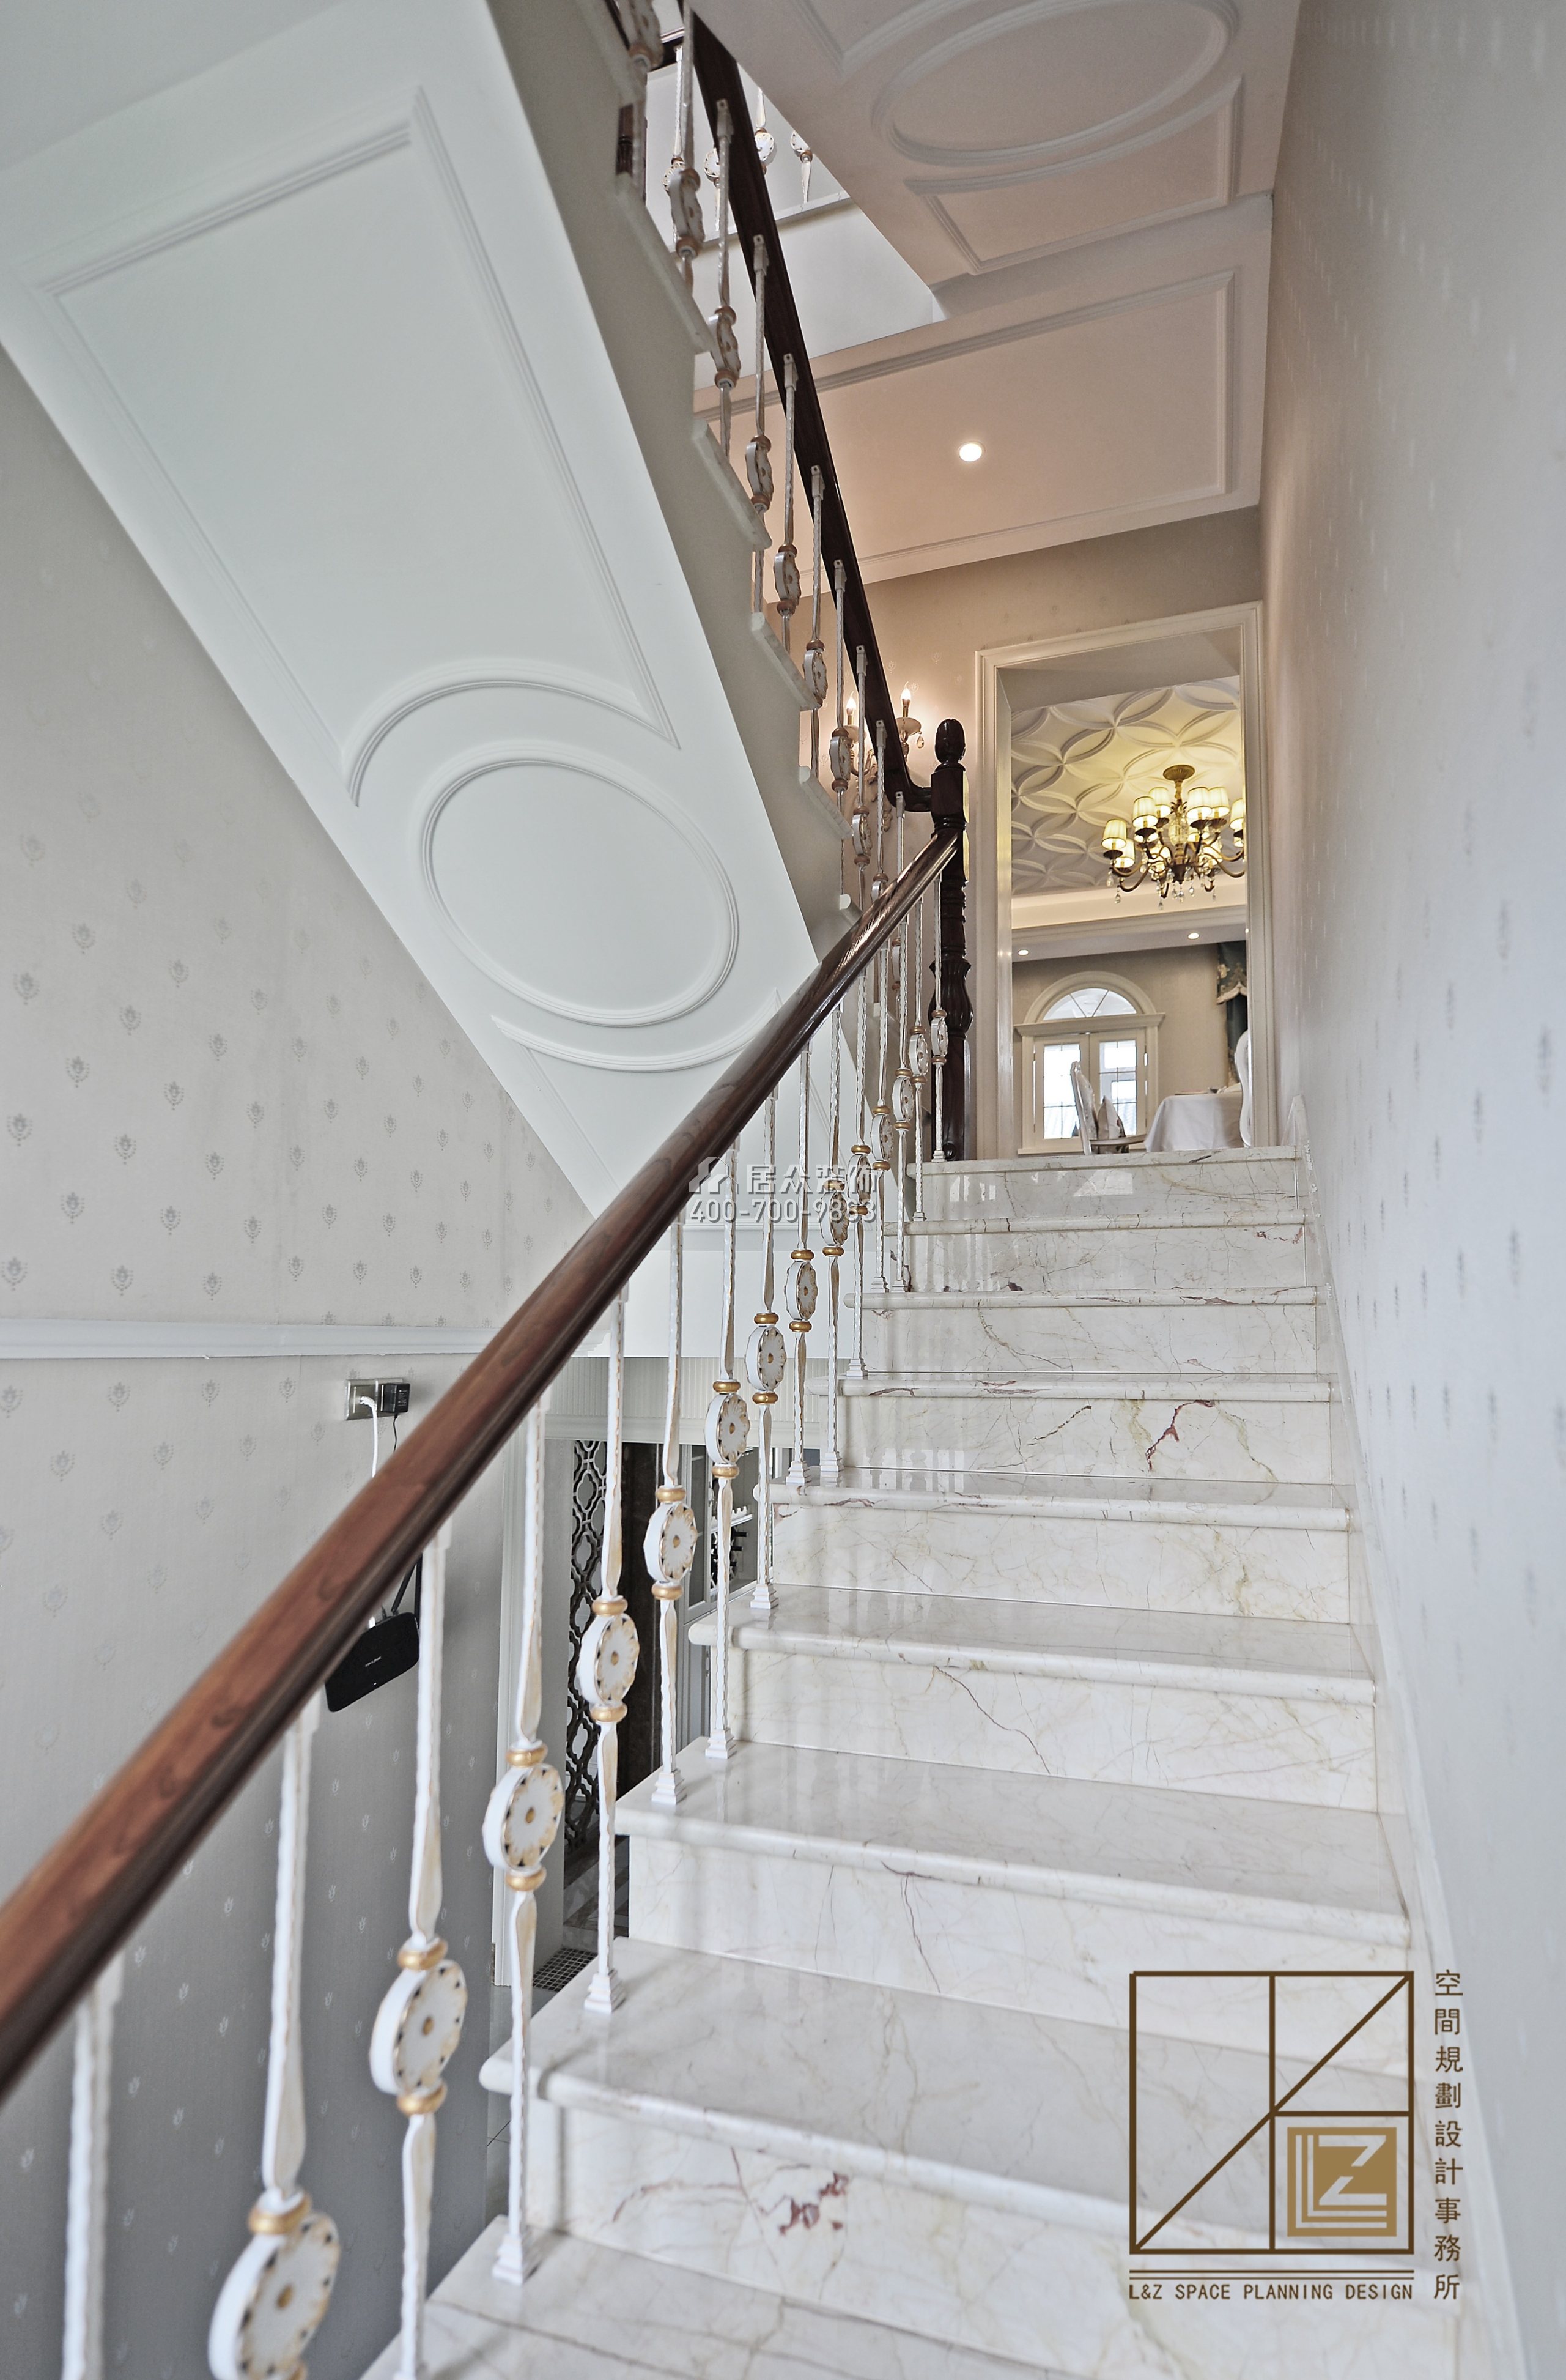 八方小區360平方米歐式風格復式戶型樓梯裝修效果圖